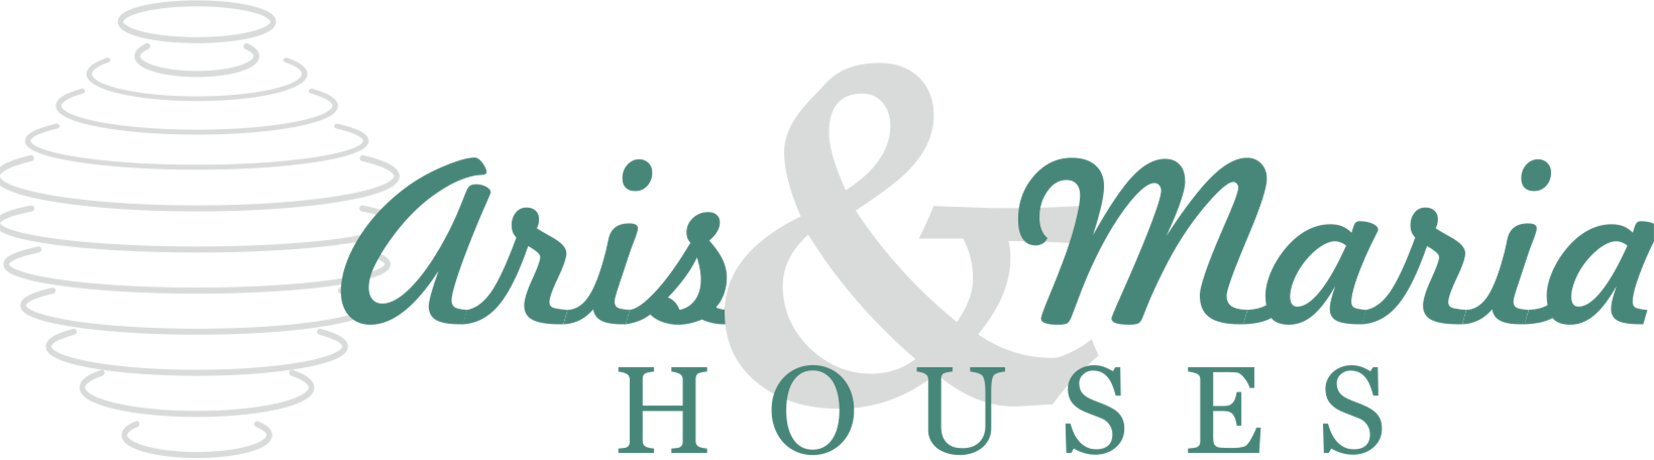 Λογότυπος των καταλυμάτων Aris - Maria houses